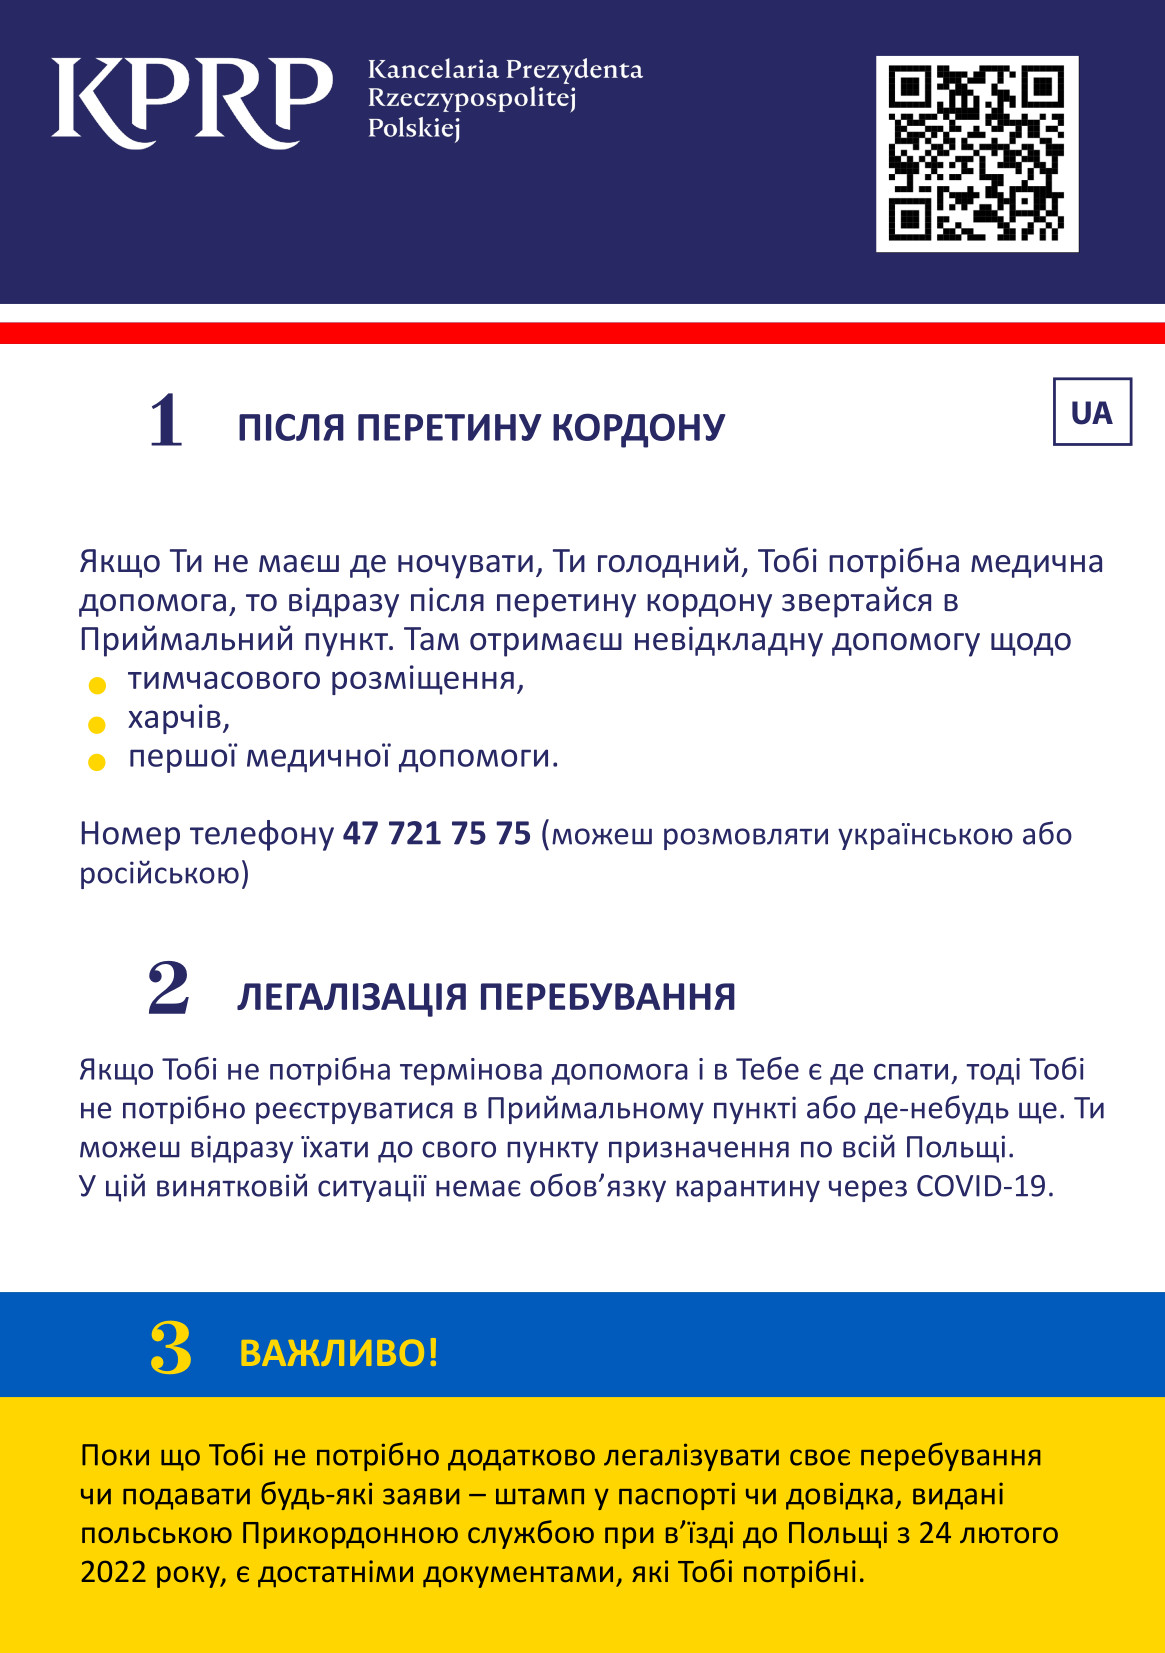 Strona pierwsza ulotki w języku ukraińskim